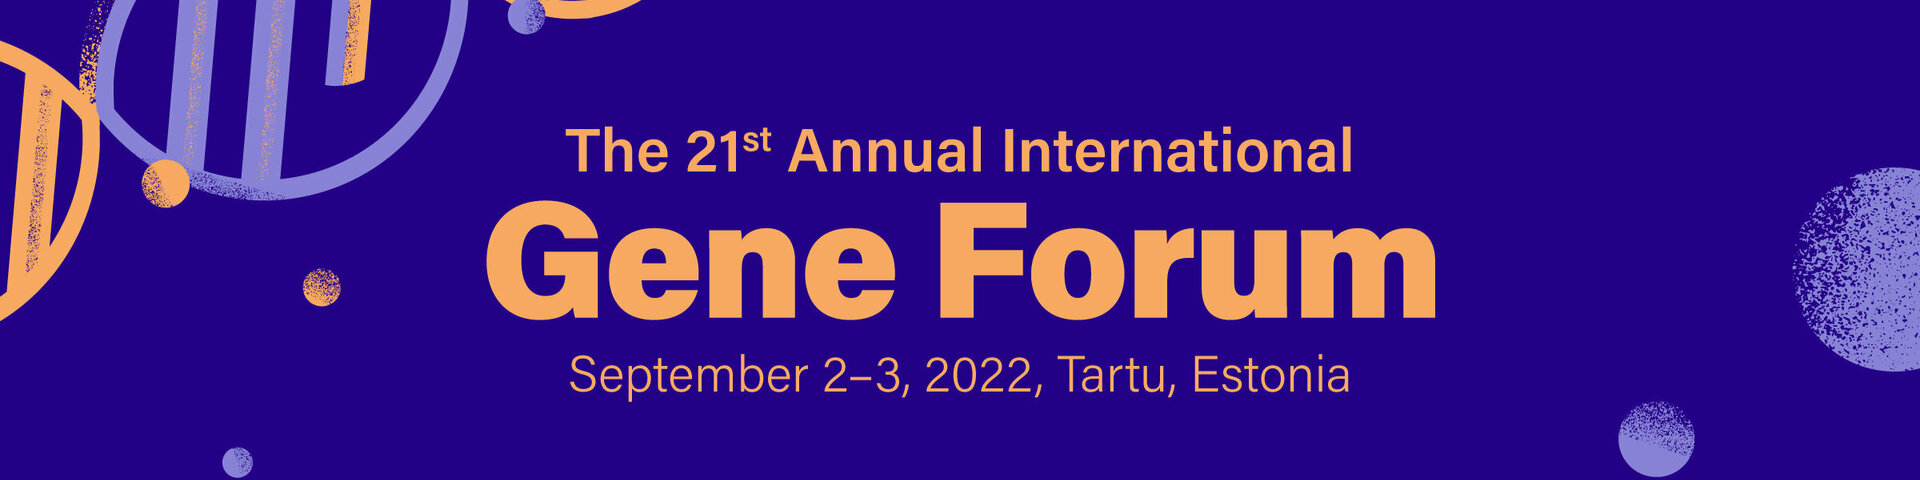 Gene Forum 2022